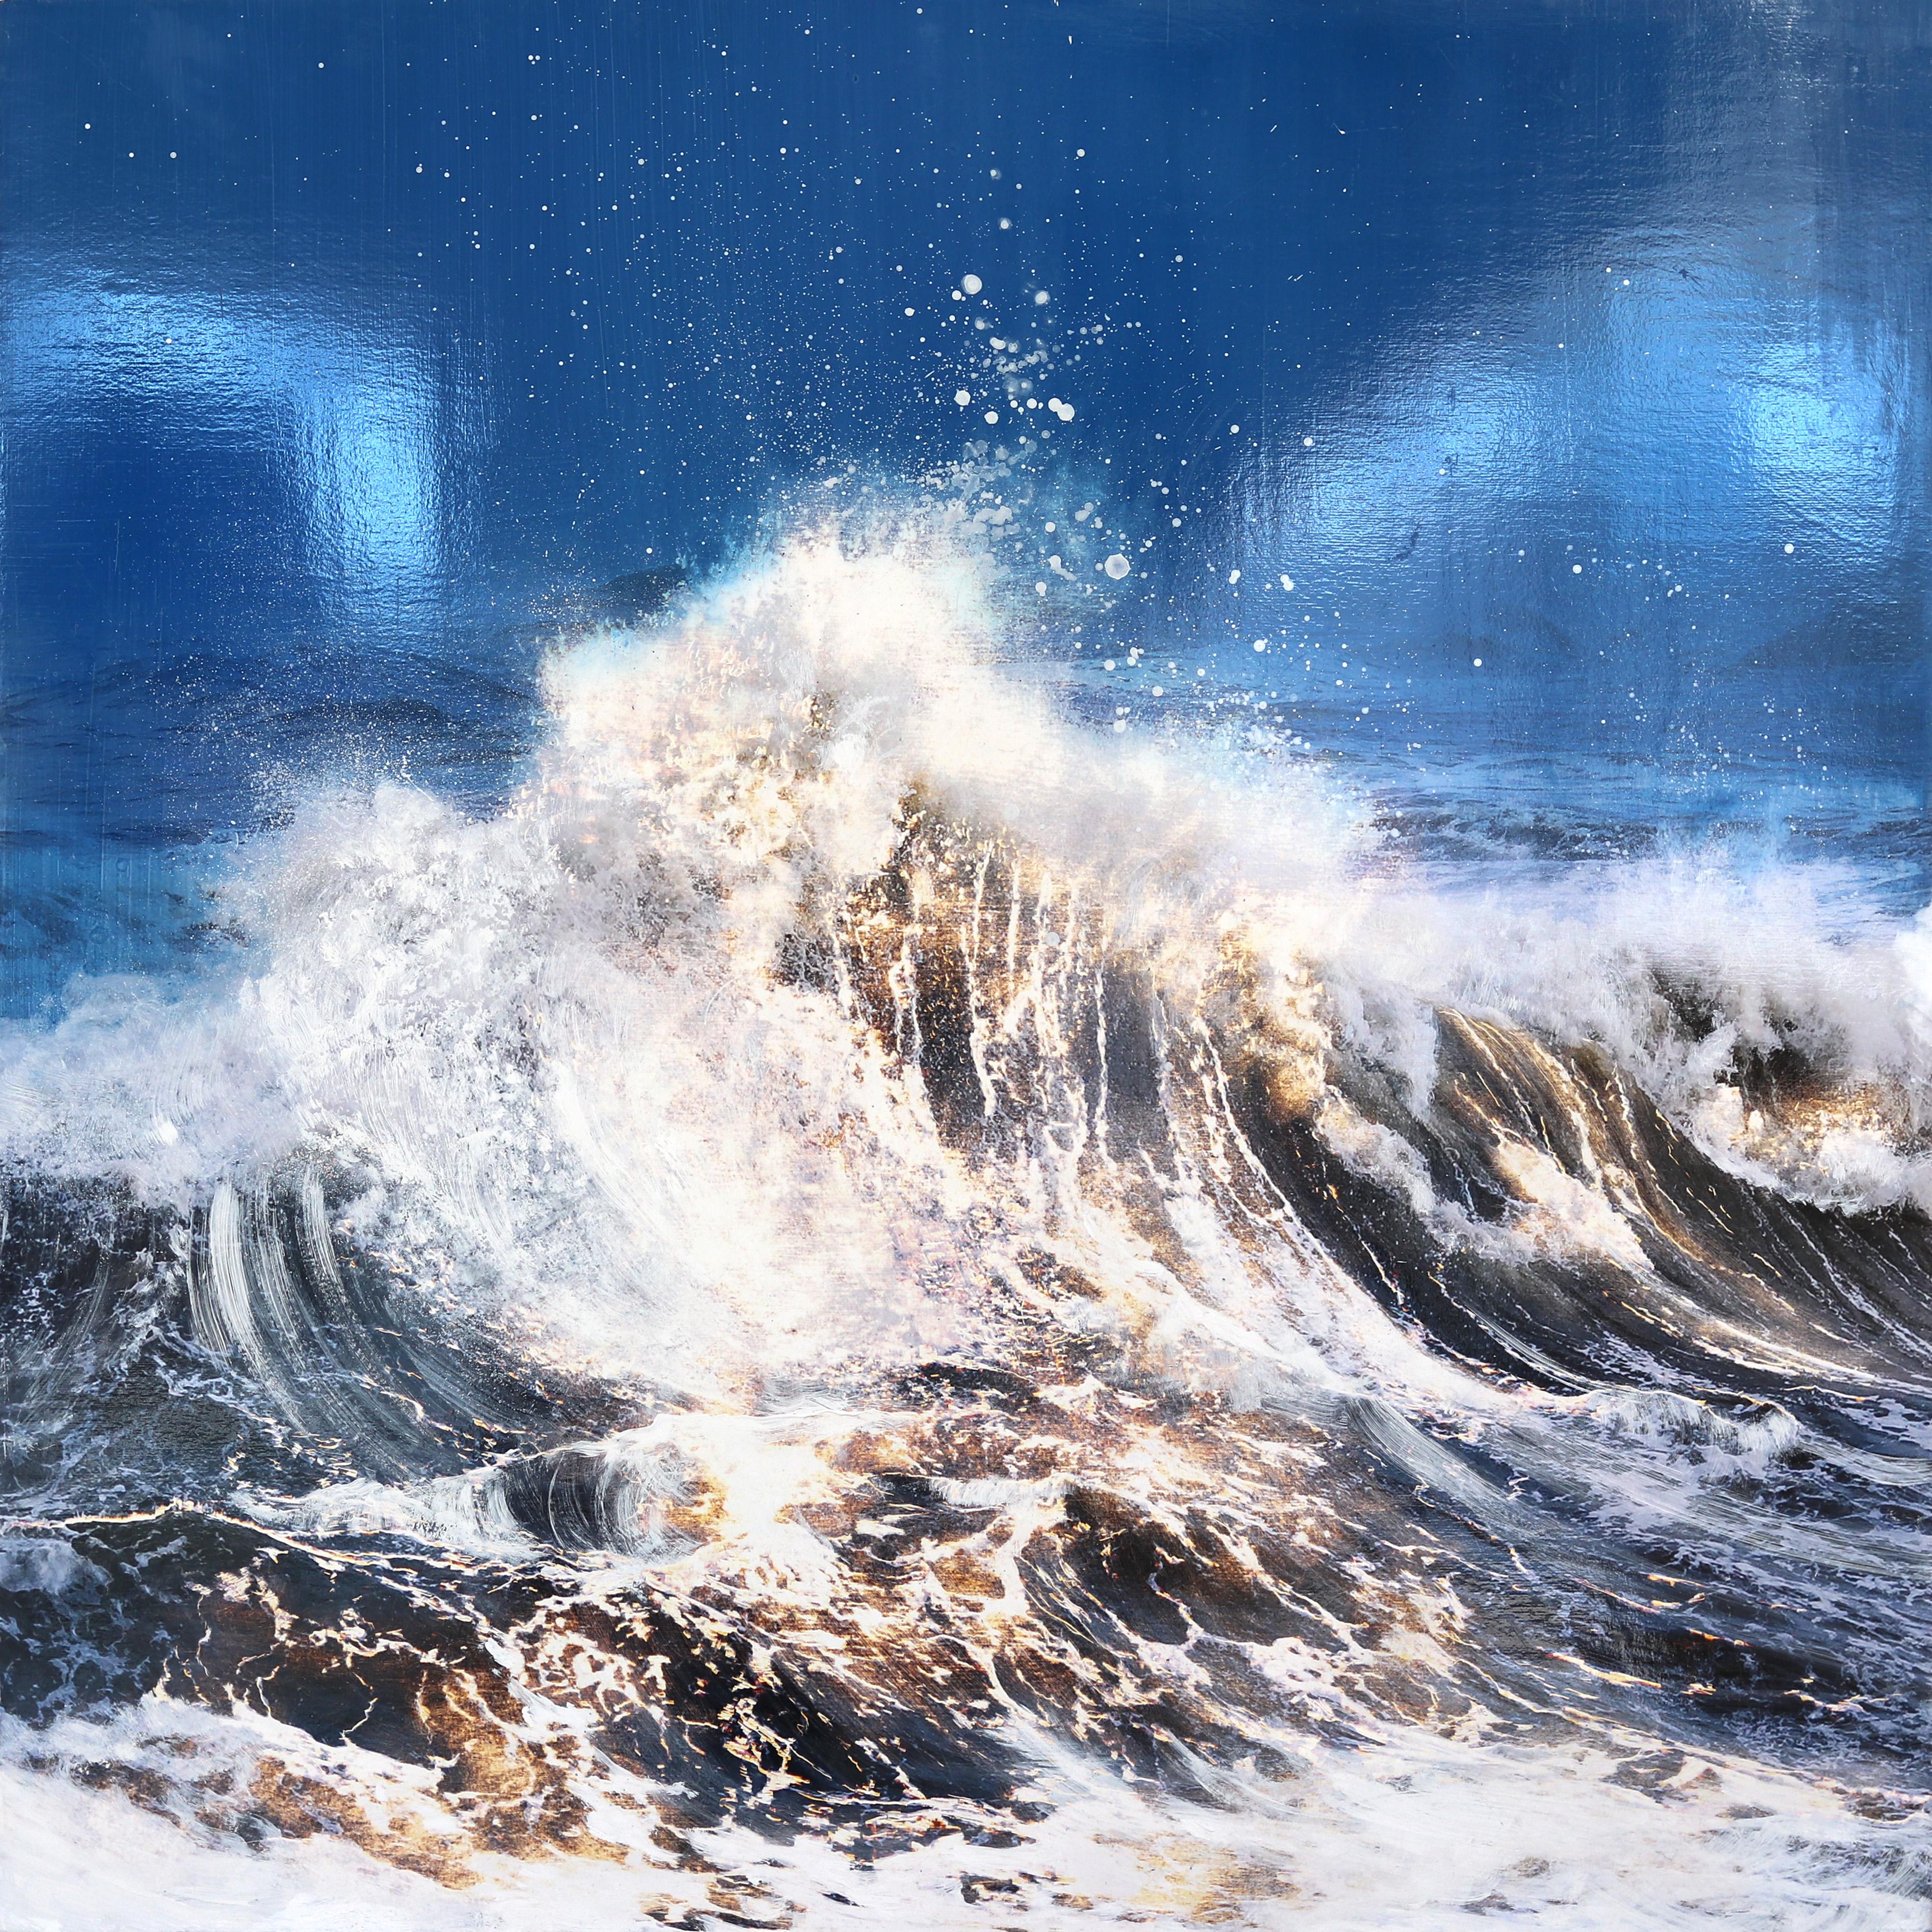 Untamed - Des vagues océaniques puissantes - Mixed Media Art de Steven Nederveen